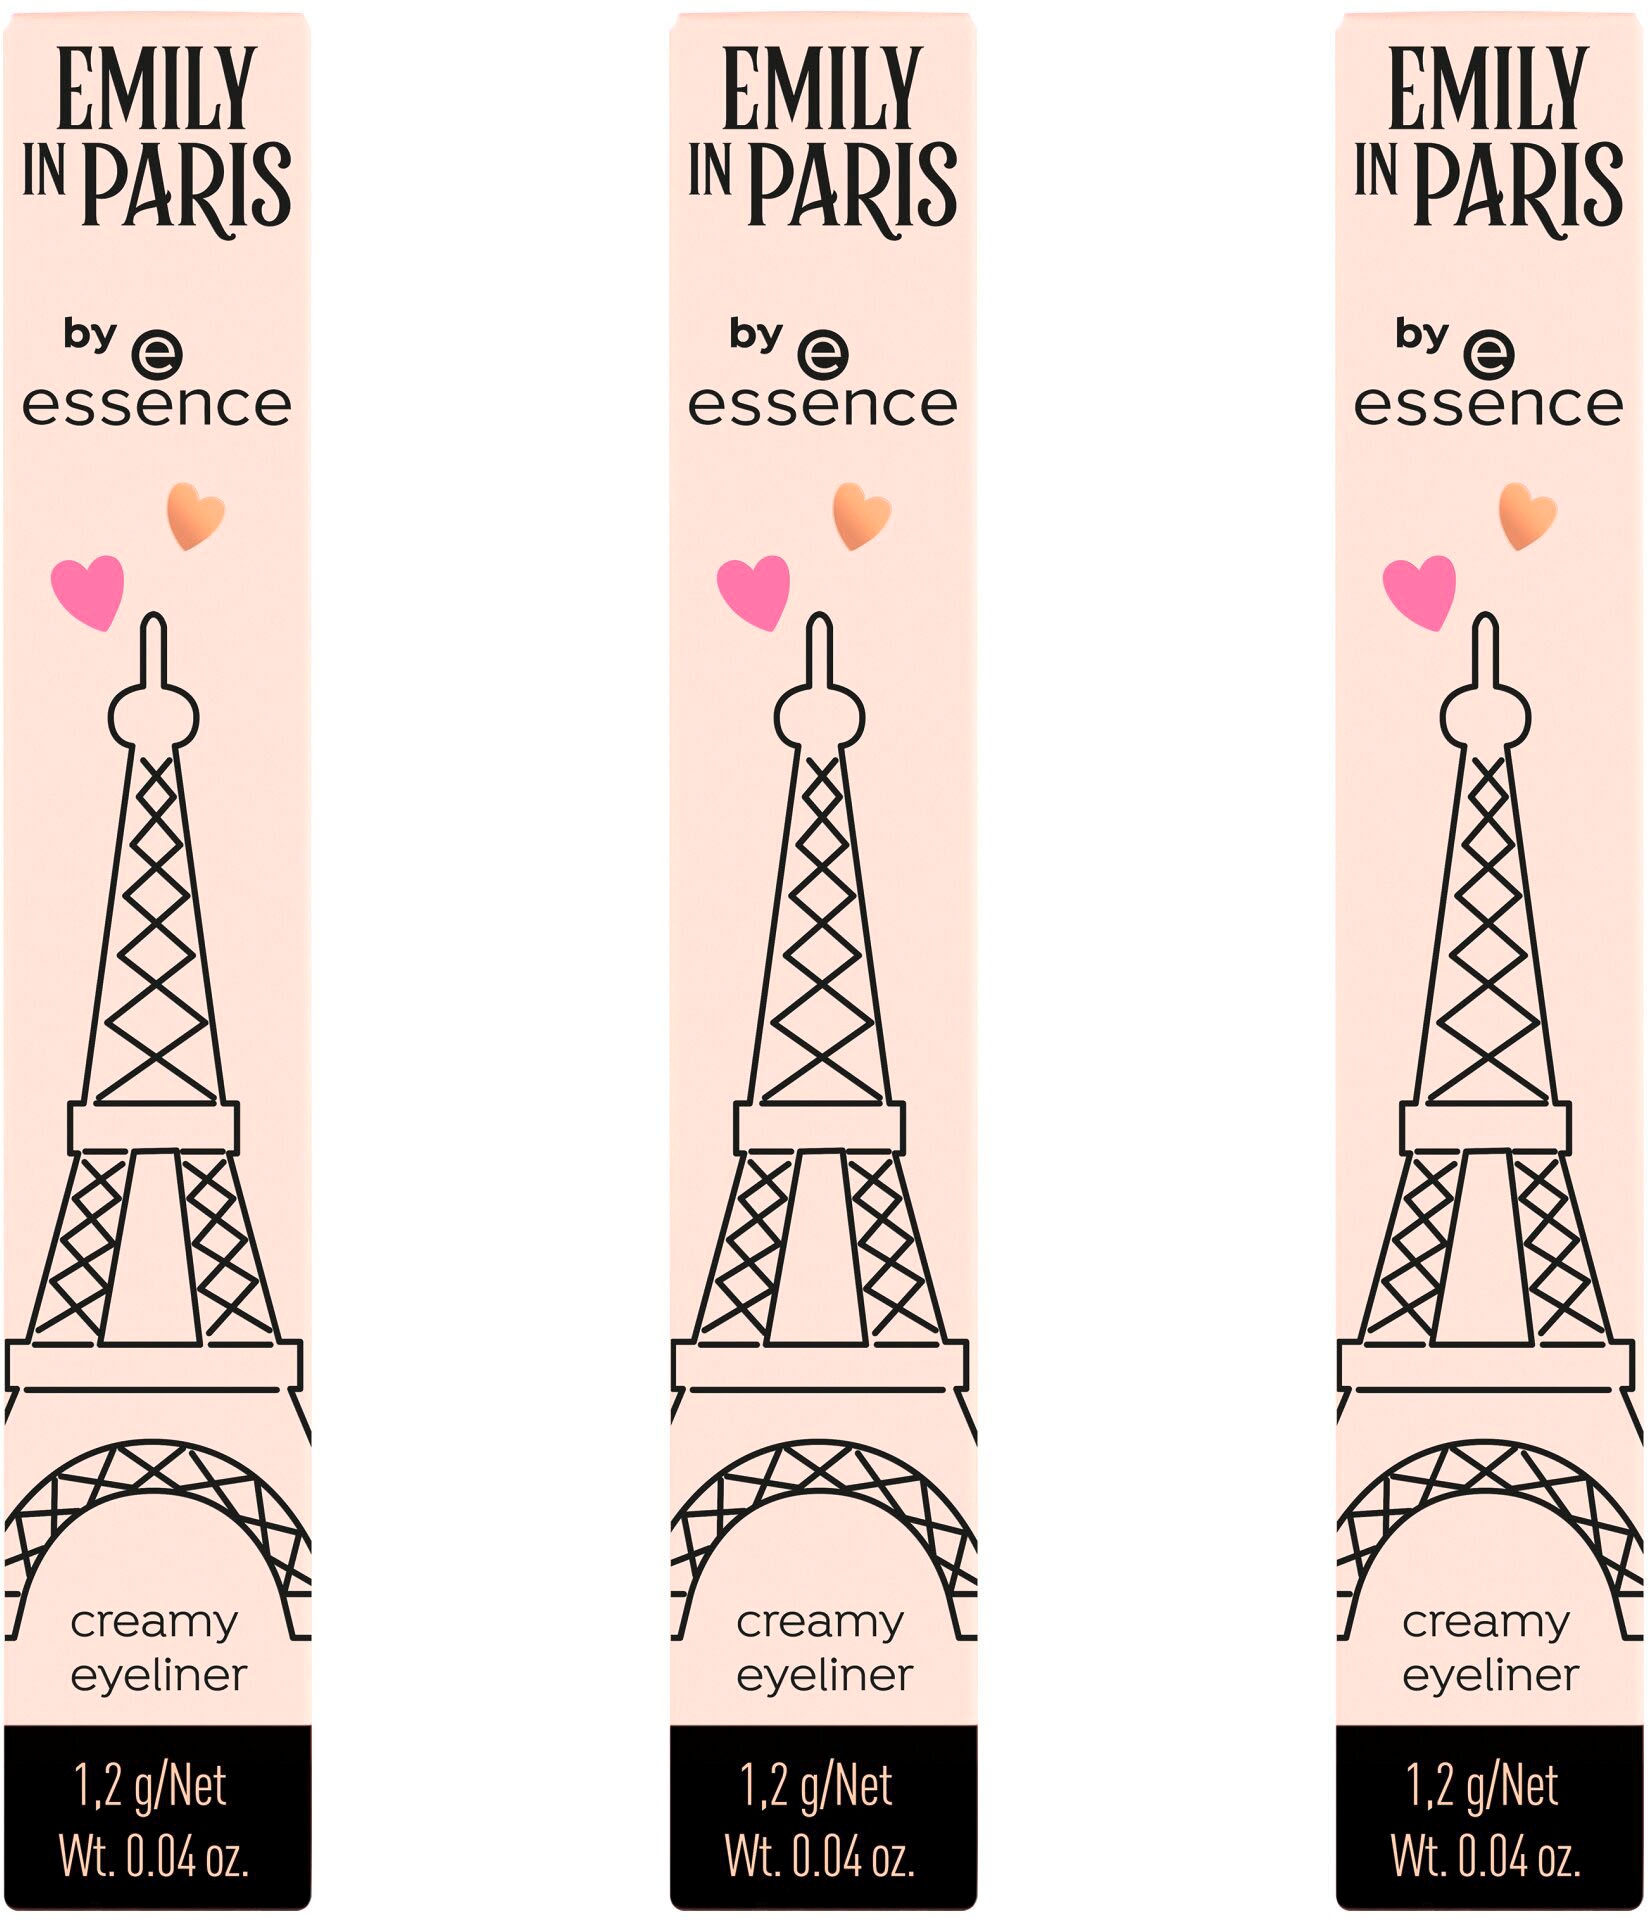 PARIS by Pinsel, Augenkonturenstift essence Eyeliner OTTOversand Essence creamy »EMILY mit integriertem IN bei eyeliner«, vegan